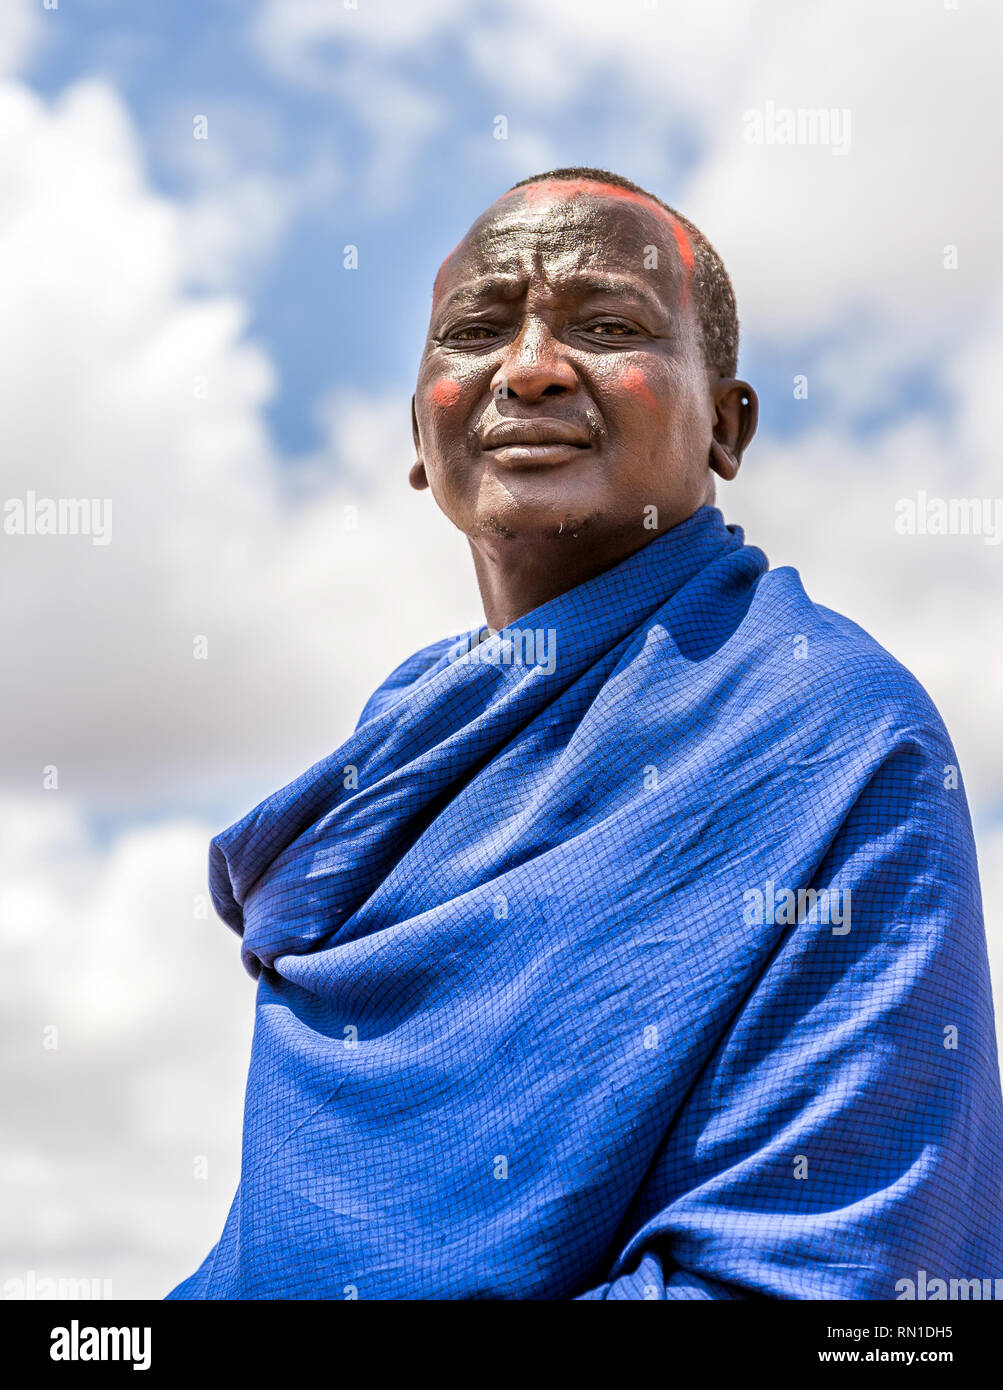 MASAI VILLAGE, KENYA - OCTOBER 11, 2018: Unindentified african man wearing traditional clothes in Masai tribe, Kenya Stock Photo